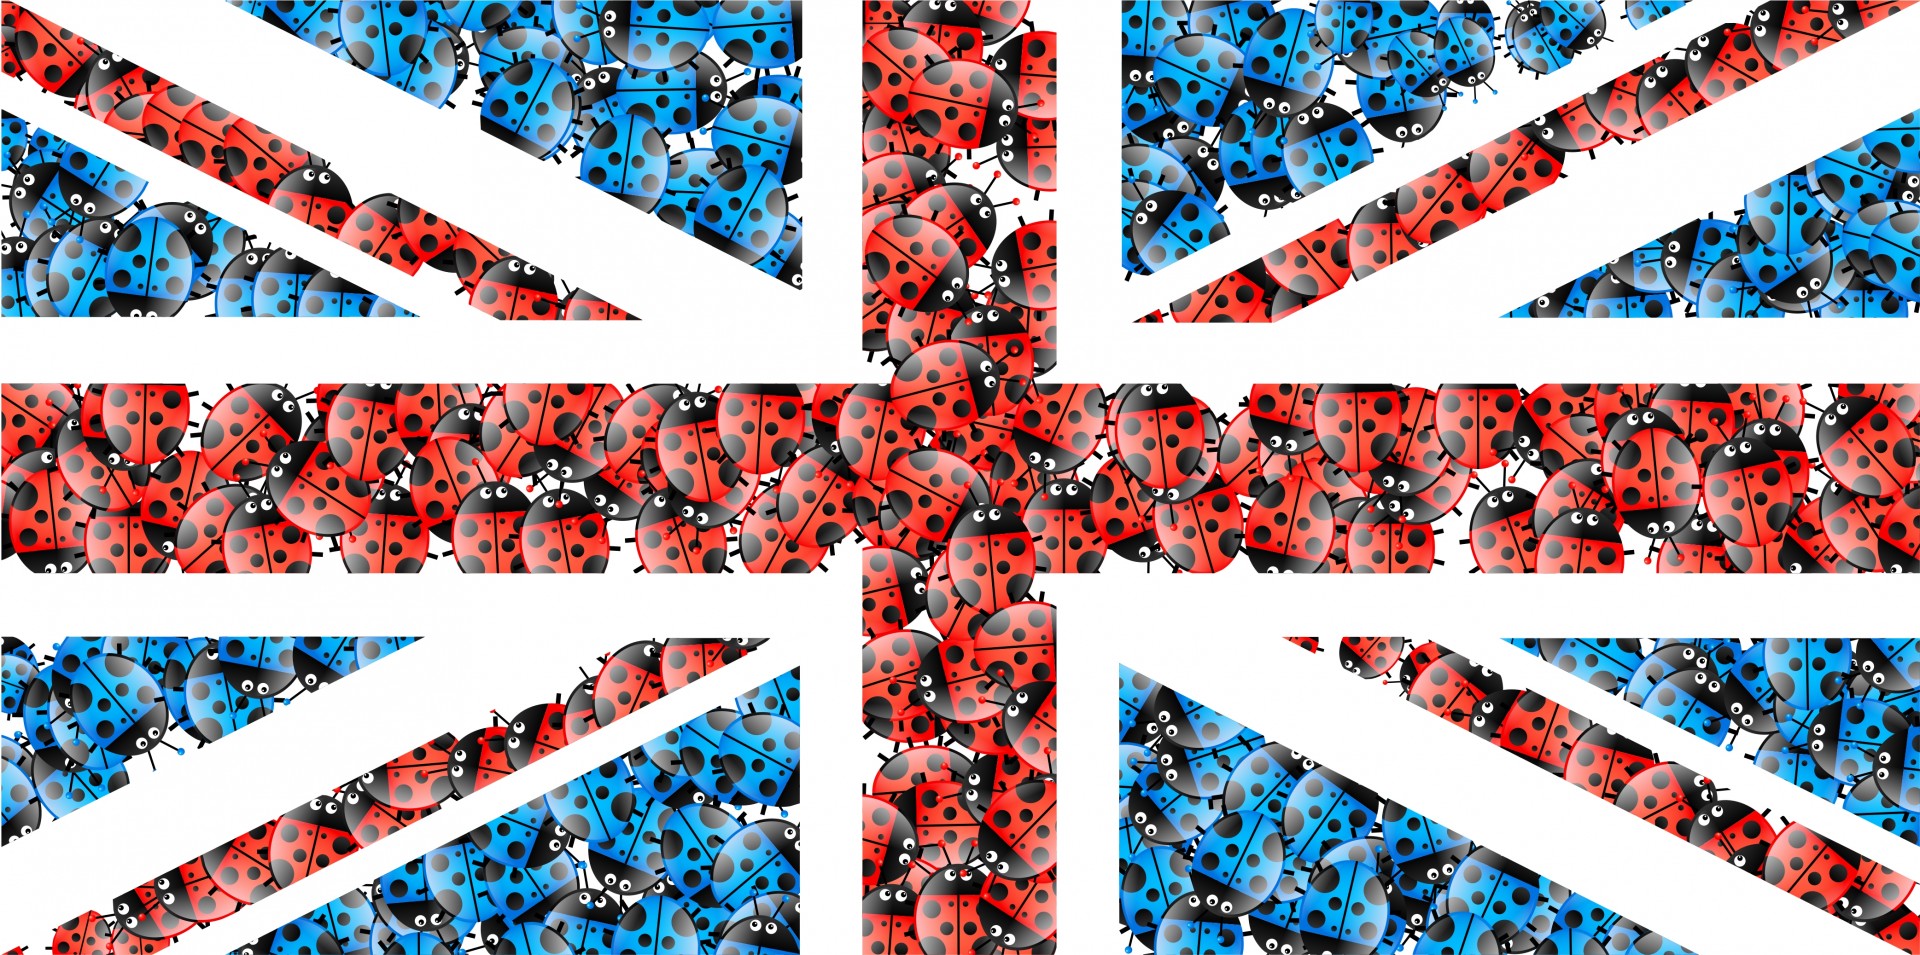 Fun and unique illustration of the UK Union Jack flag made up of cartoon ladybugs.